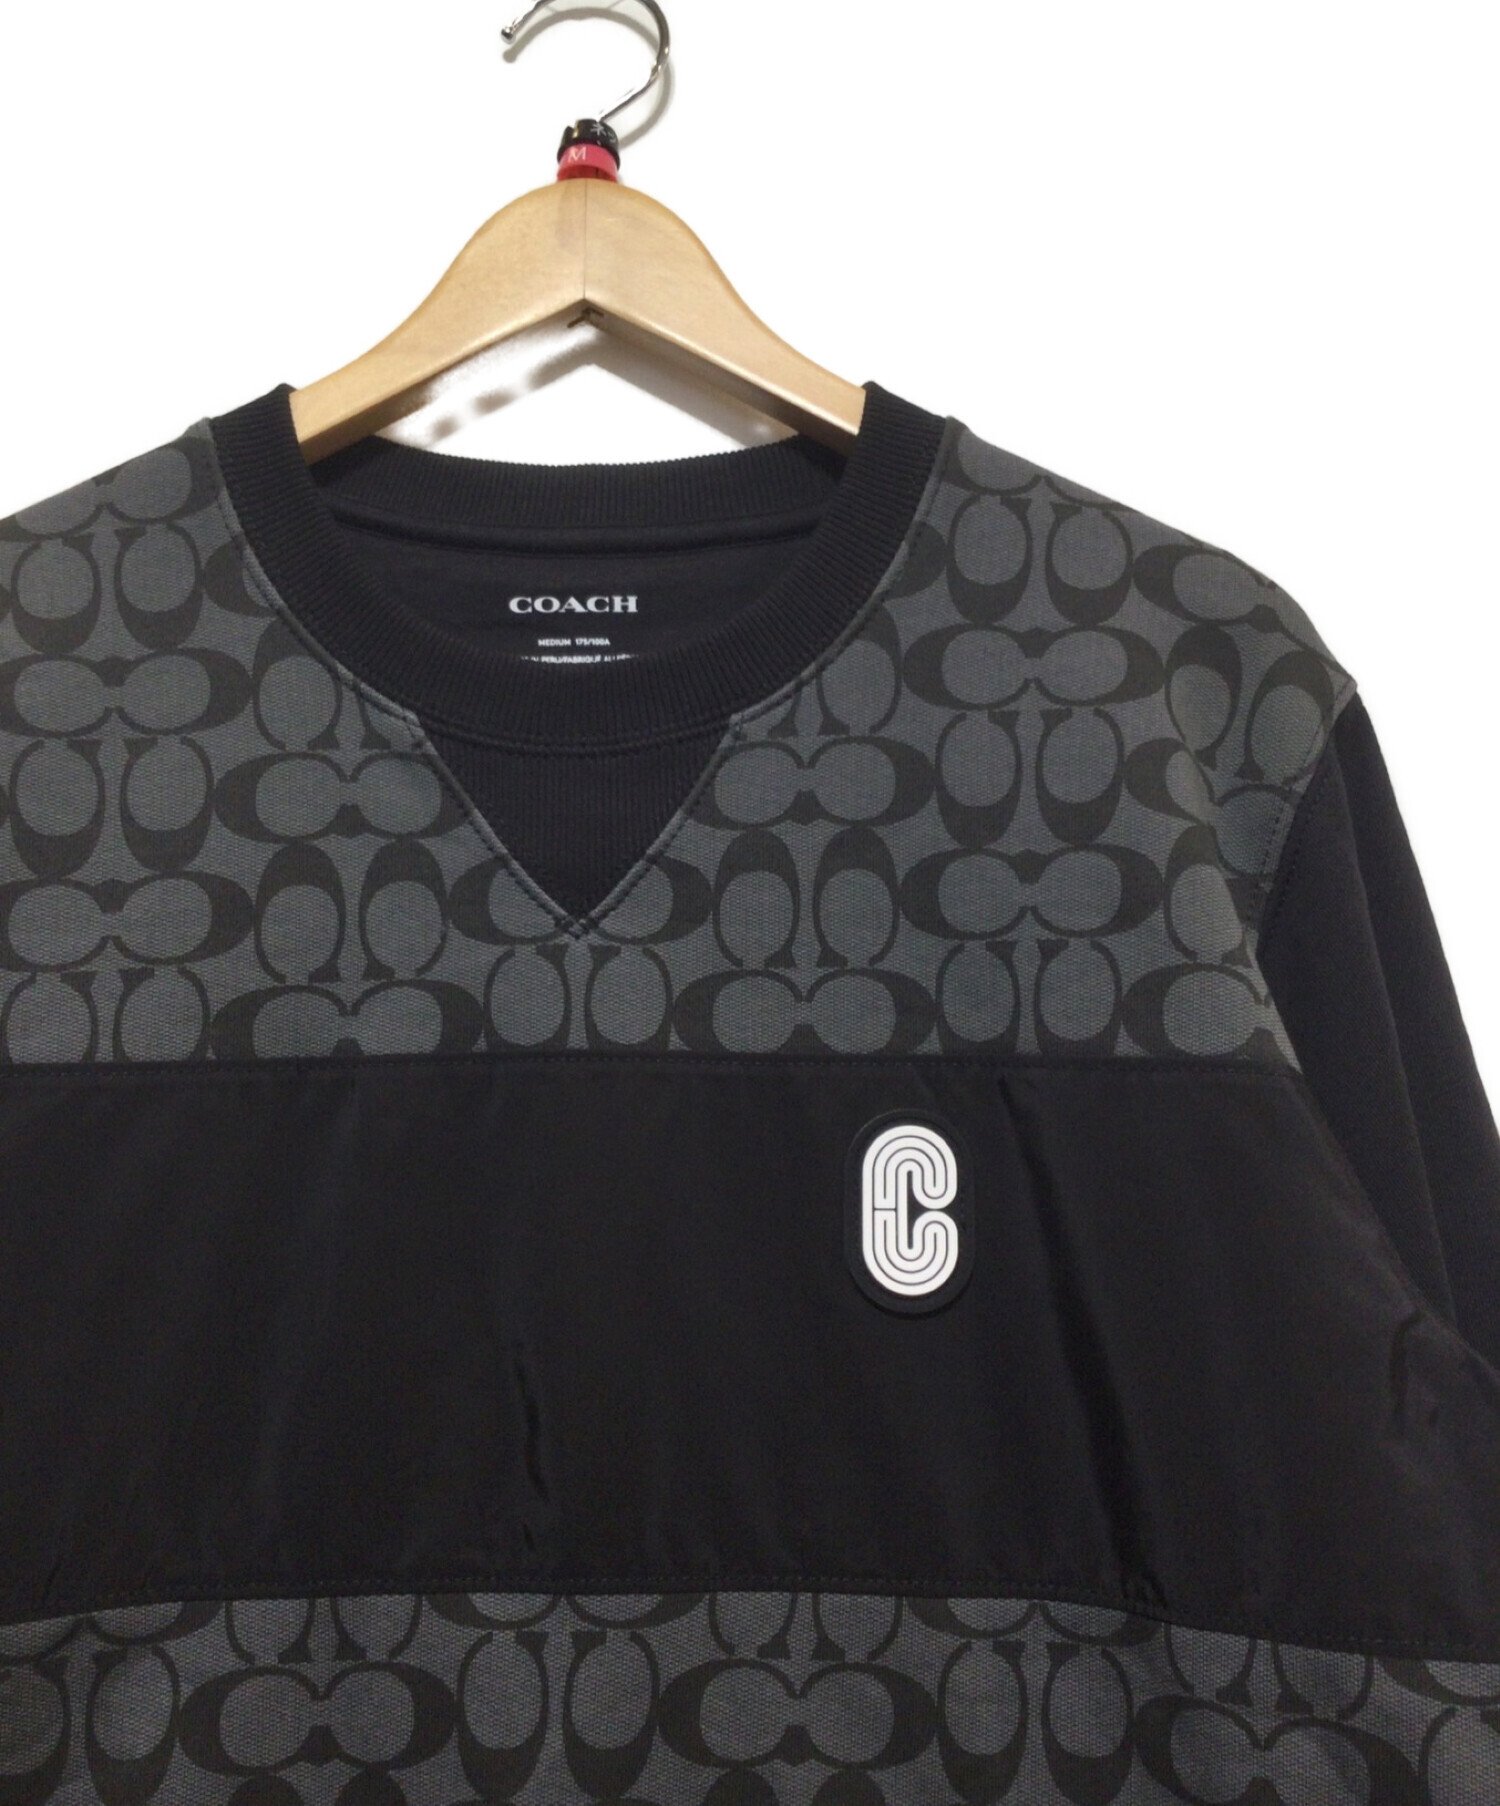 COACH (コーチ) シグネチャークルーネックスウェットシャツ ブラック サイズ:M